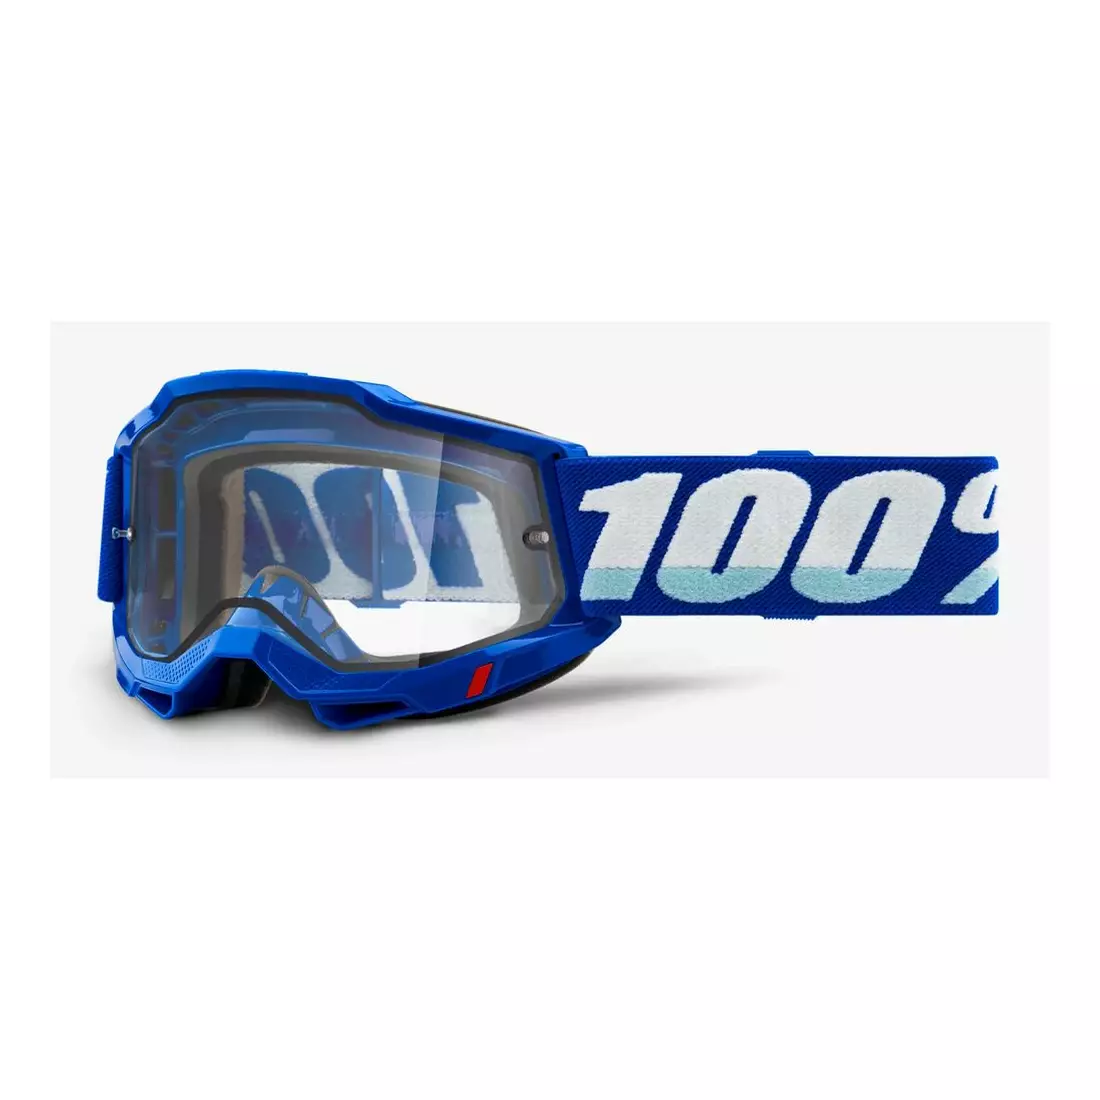 100% cyklistické brýle ACCURI 2 ENDURO MOTO BLUE (Průhledné dvojité zasklení) 1STO-50221-501-02